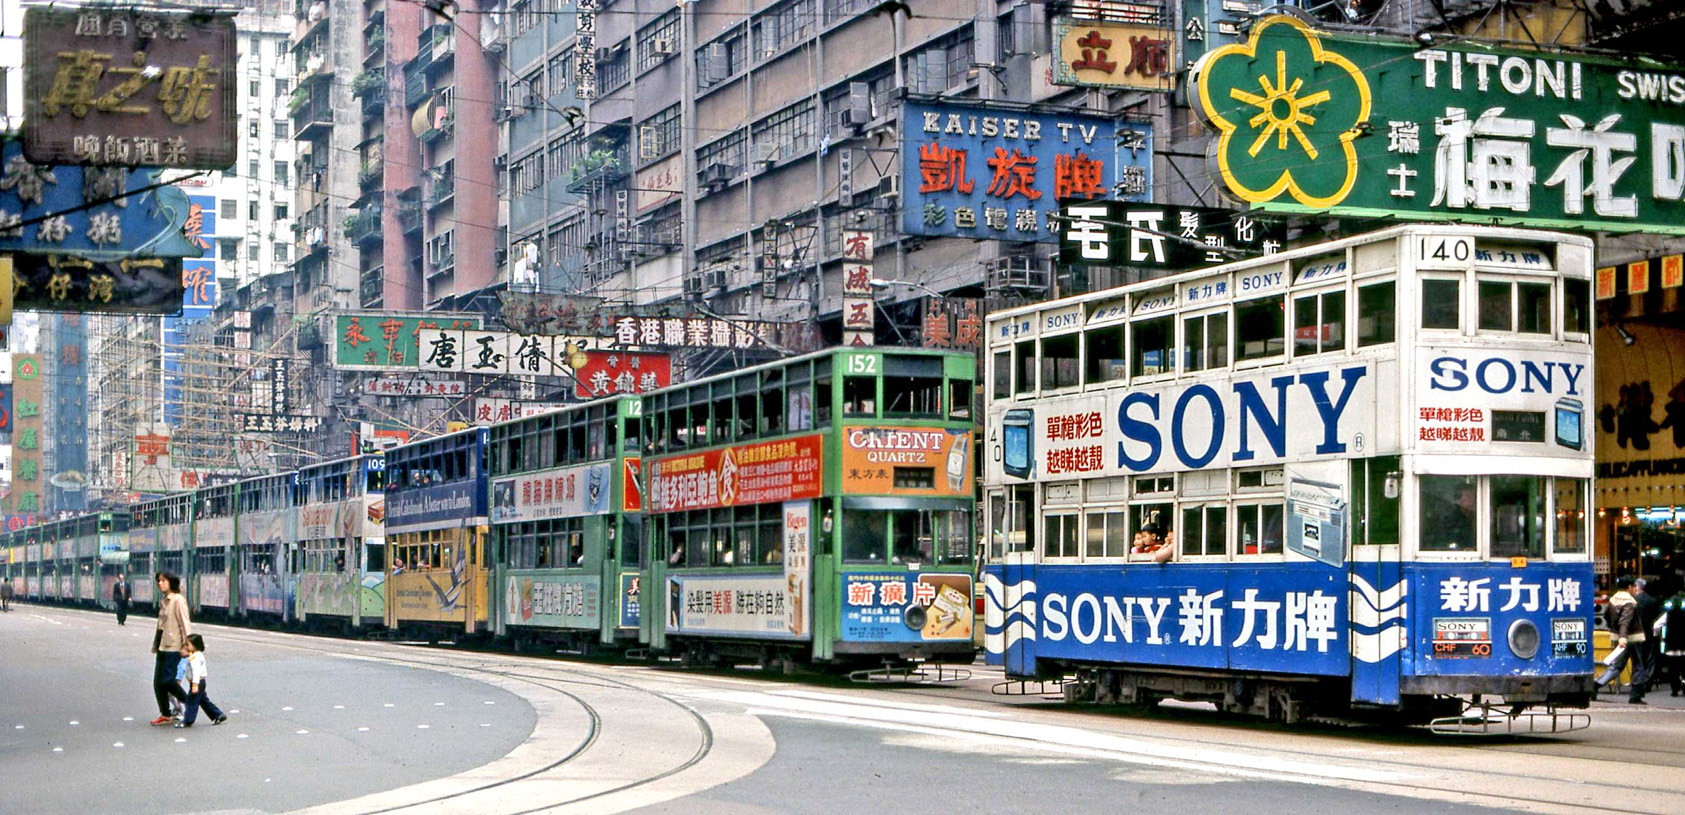 Hong Kong, Hong Kong Tramways VI № 140; Hong Kong — Hong Kong Tramways — Old photos; Hong Kong — Hong Kong Tramways — Miscellaneous photos